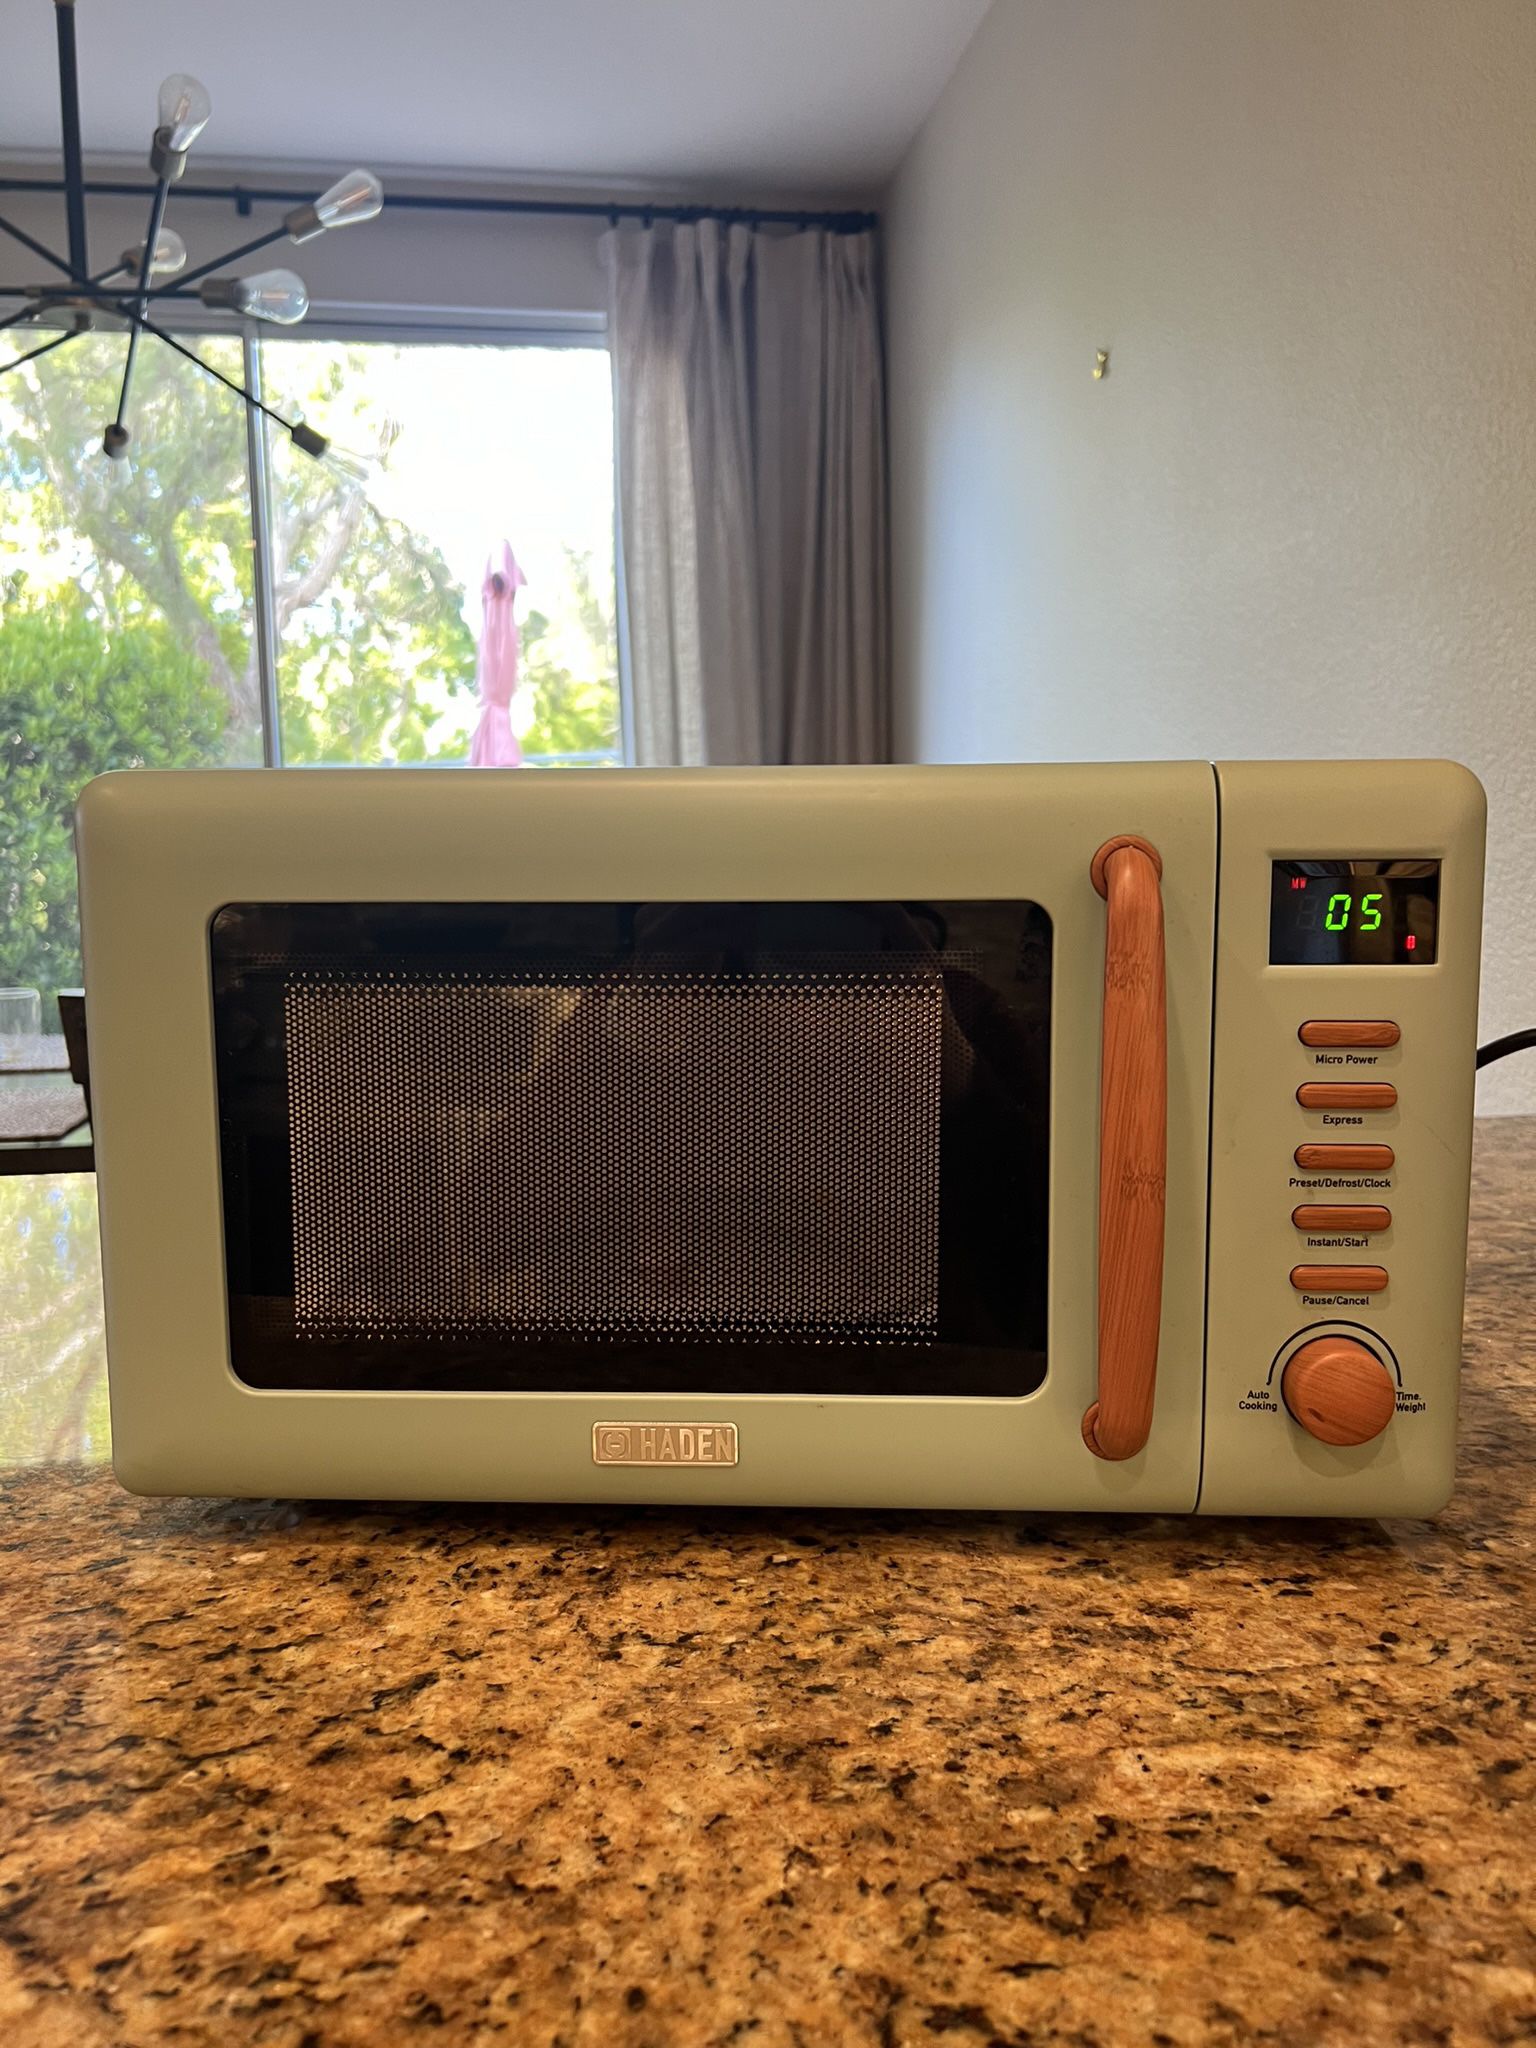 Beautiful Retro Microwave 